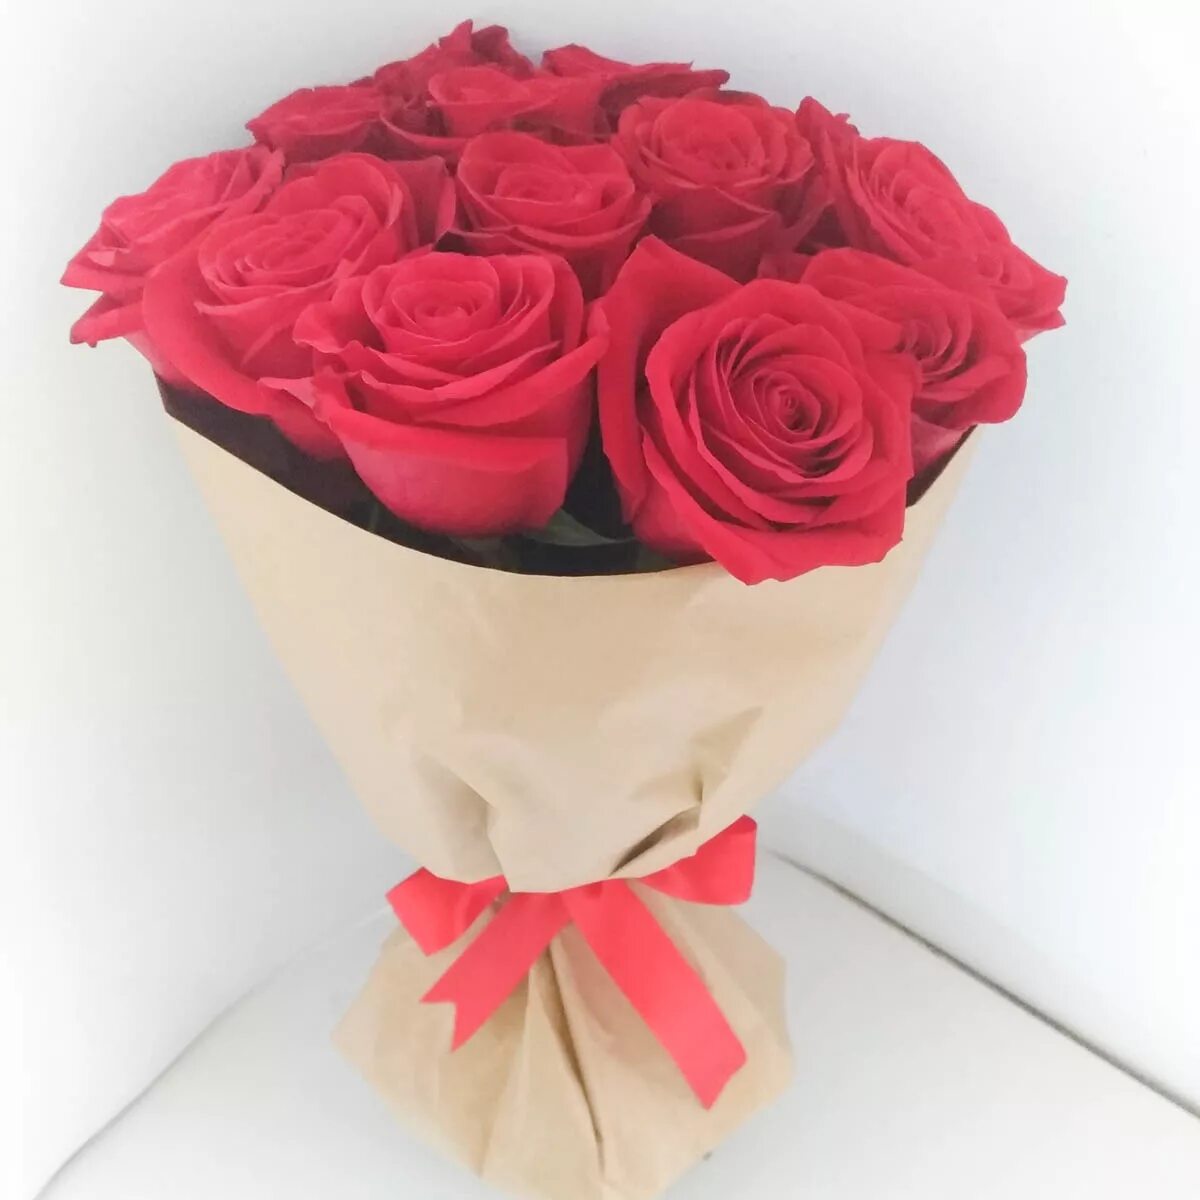 Розы в упаковке как сохранить. Розы в упаковке. Букеты из роз в упаковке. Букет из красных роз в красивой упаковке. Красные розы в упаковке.